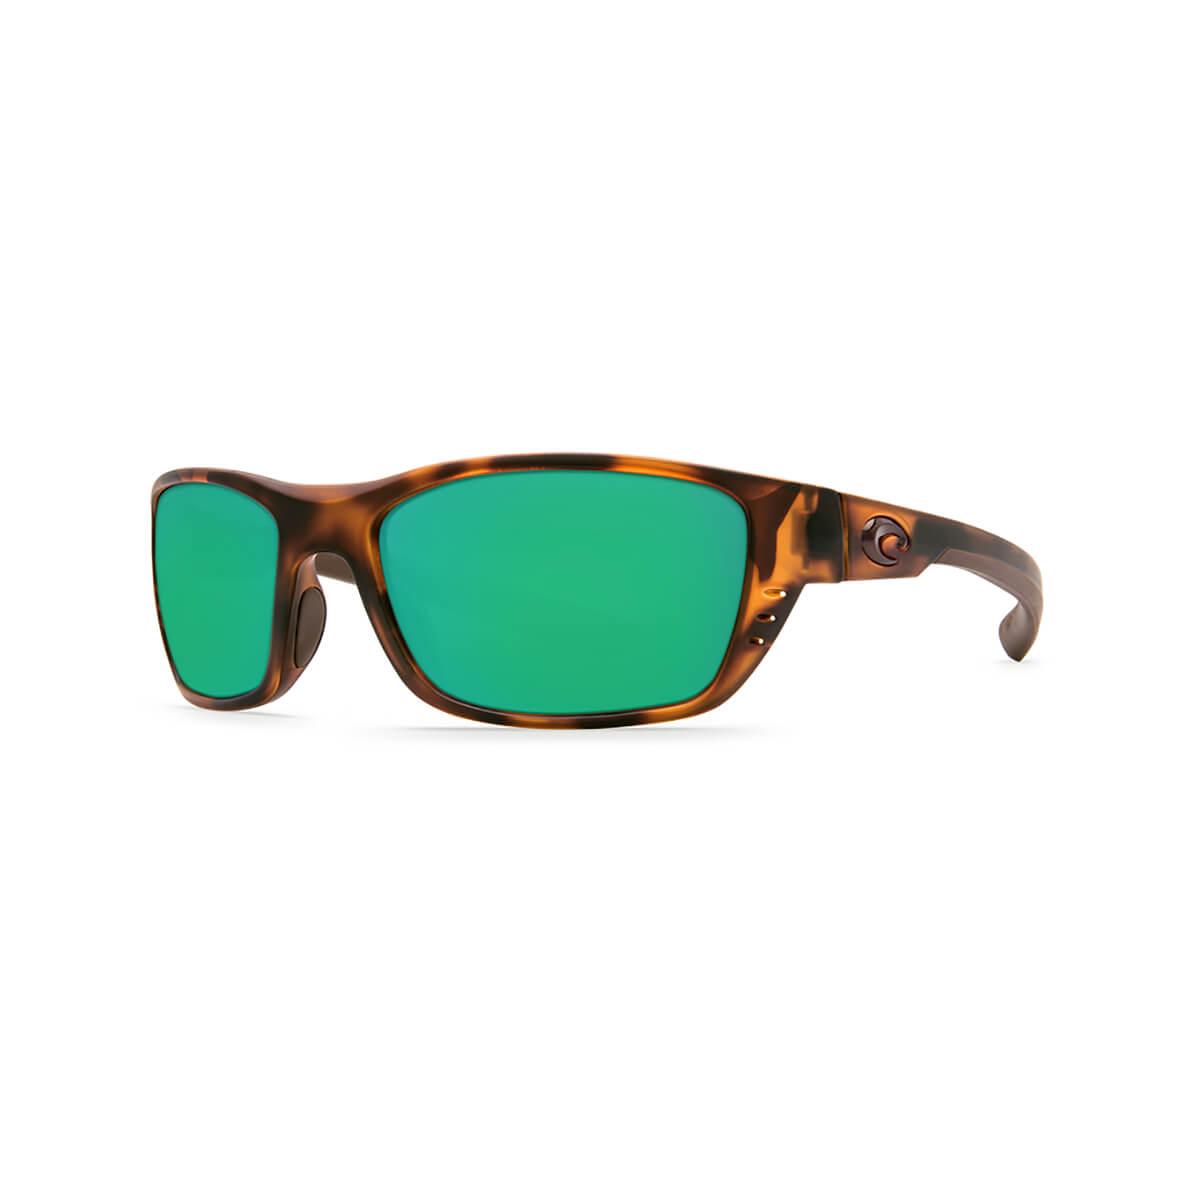  Whitetip 580p Sunglasses - Polarized Plastic